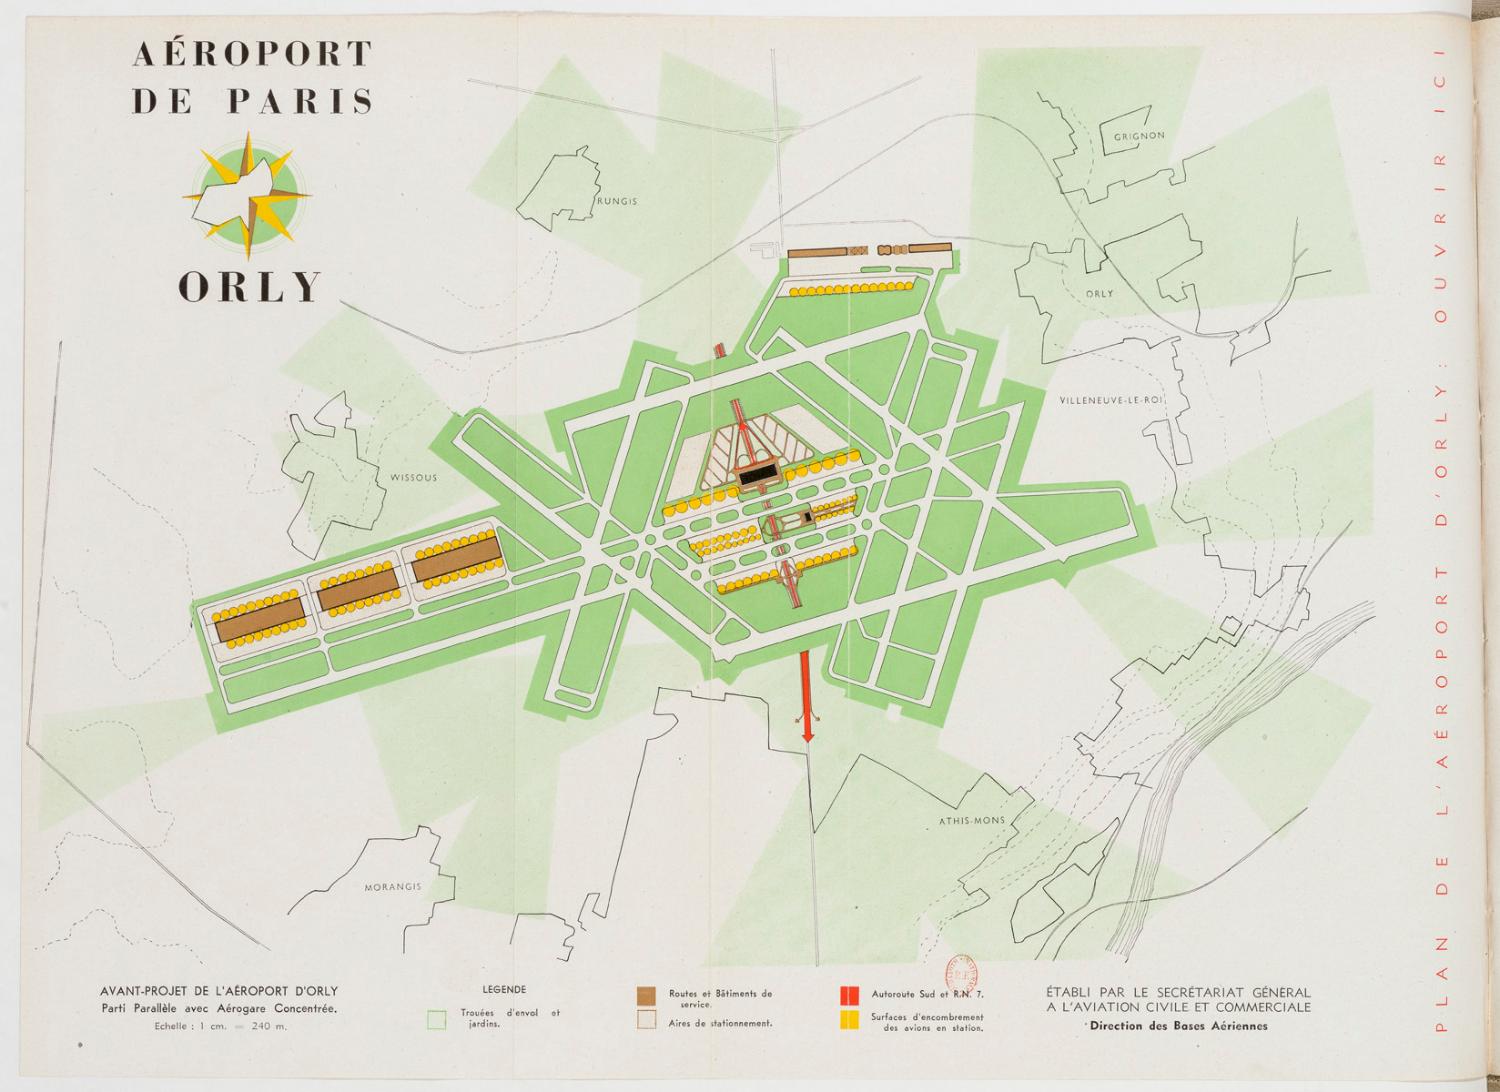 L'avant-projet de l'Aéroport d'Orly, LESIEUX Louis, "l’Aéroport d’Orly aéroport principal de Paris", Techniques et architecture, Série 7, n° 9-12, décembre 1947, p. 481.